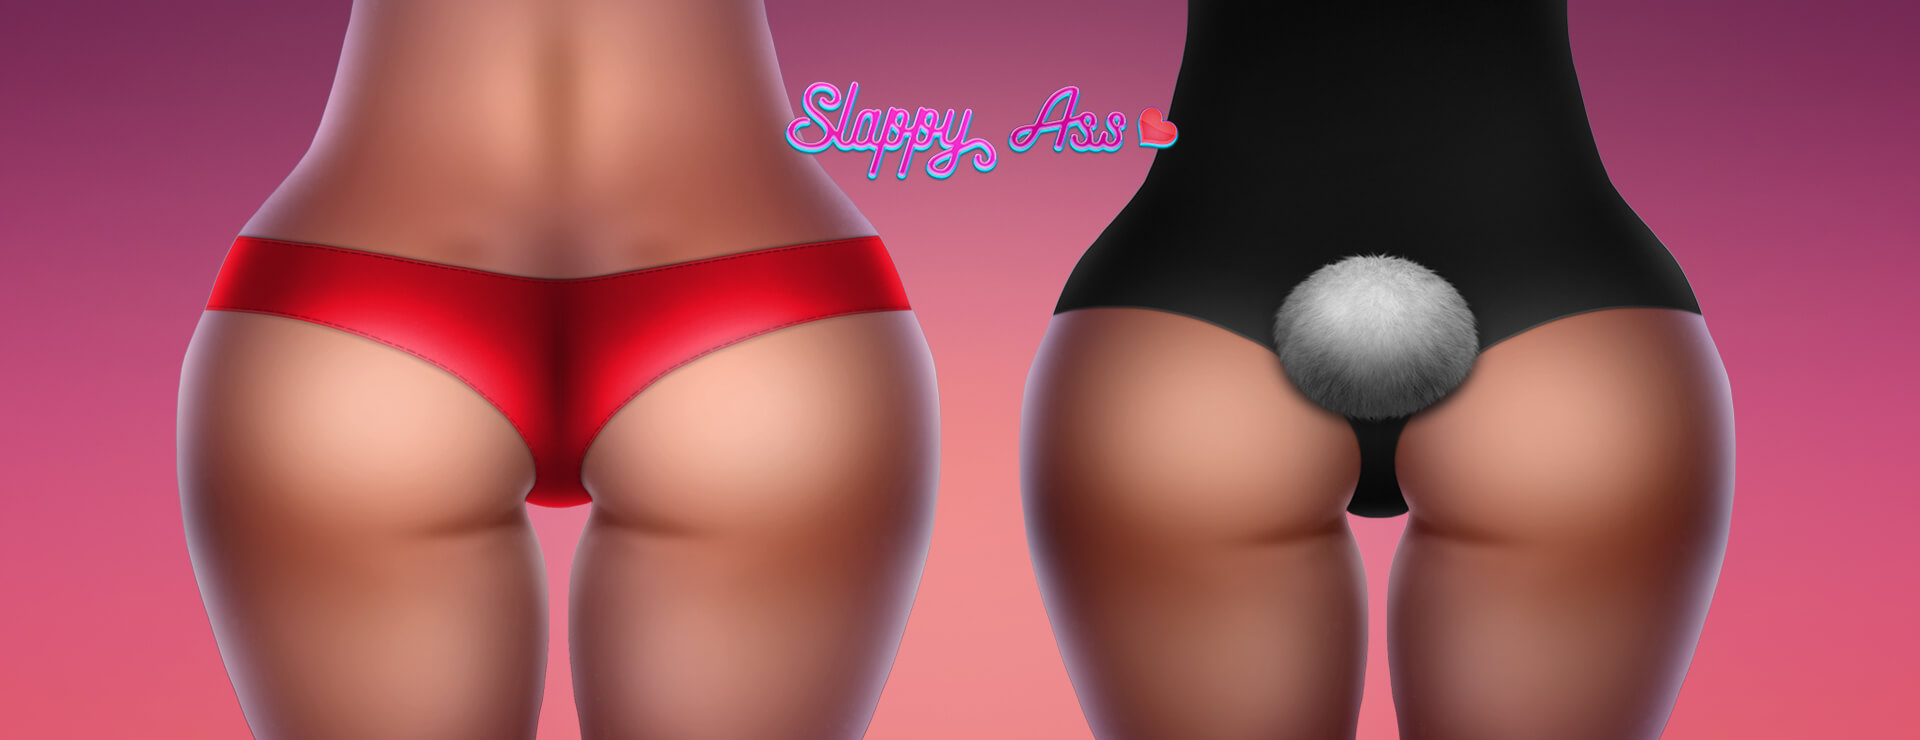 Slappy Ass - Symulacja Gra